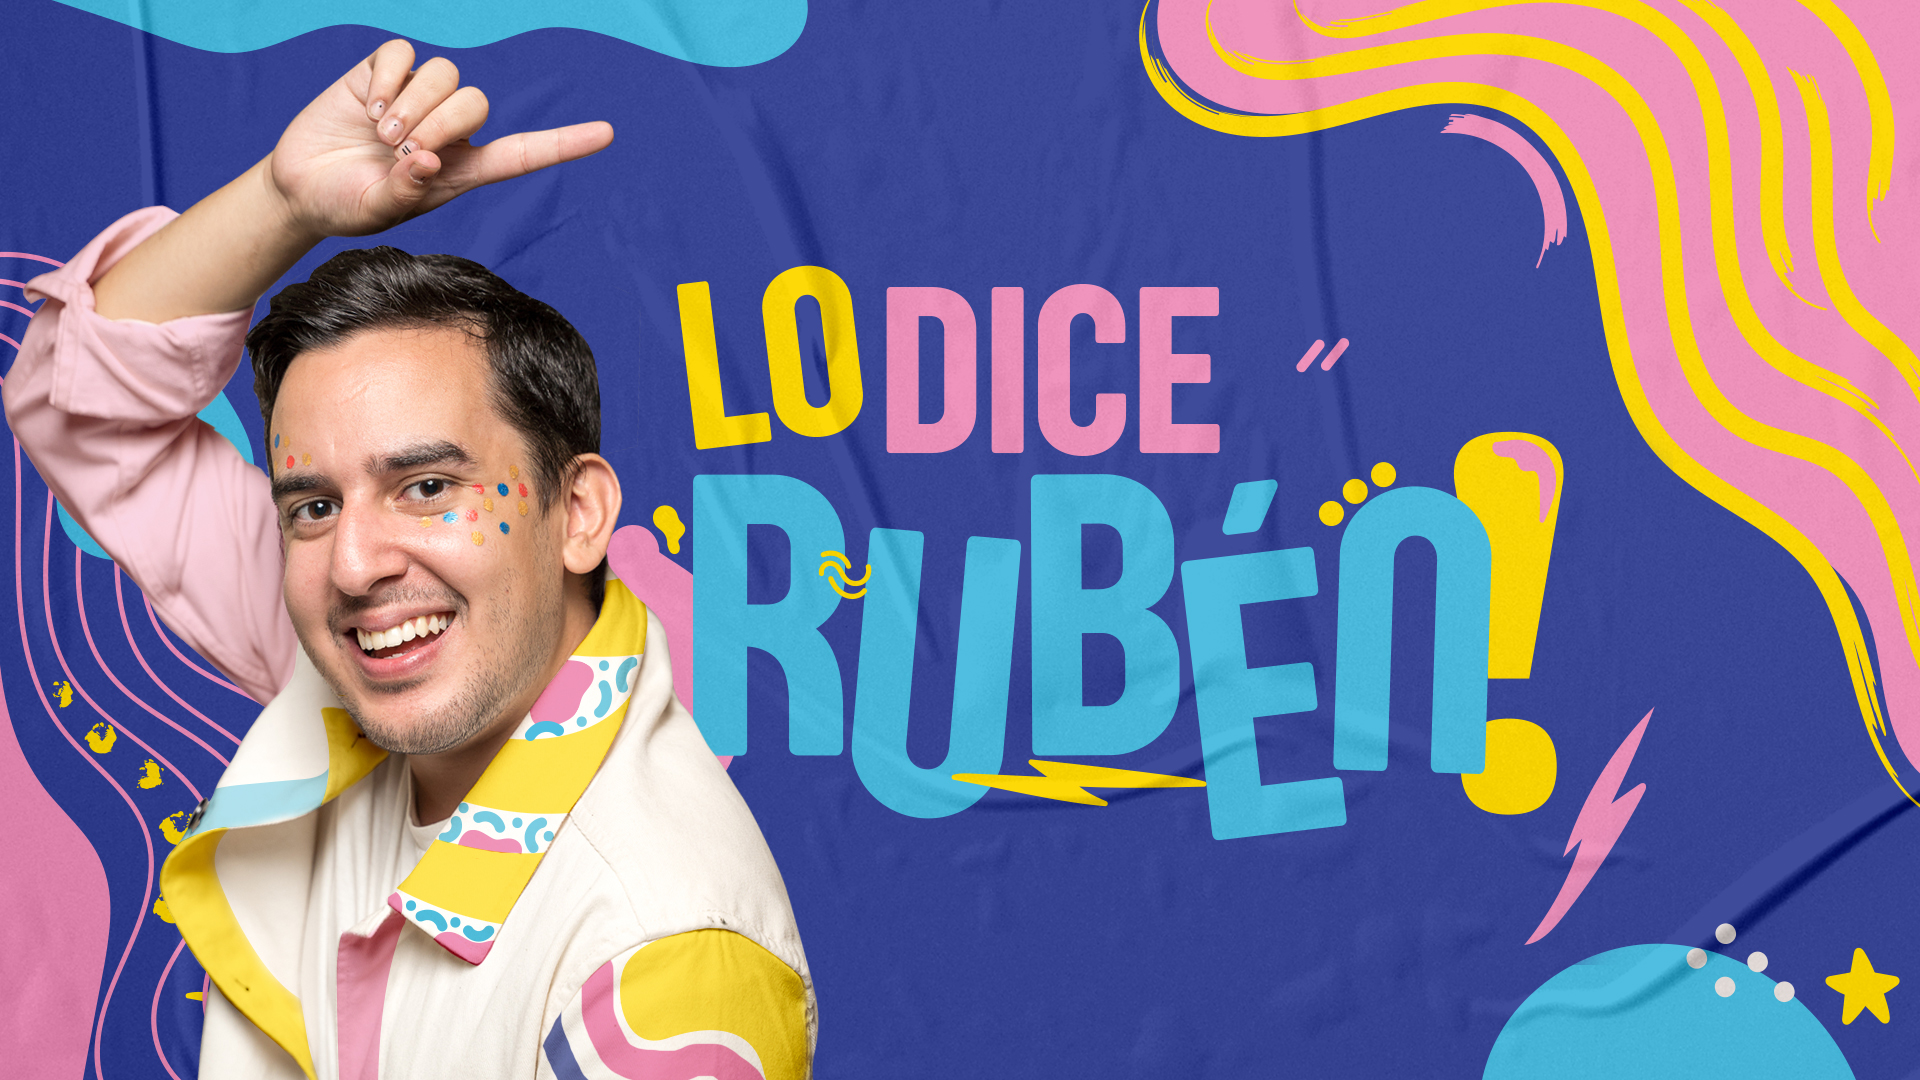 “Lo dice Rubén”: Un nuevo web show que sorprenderá